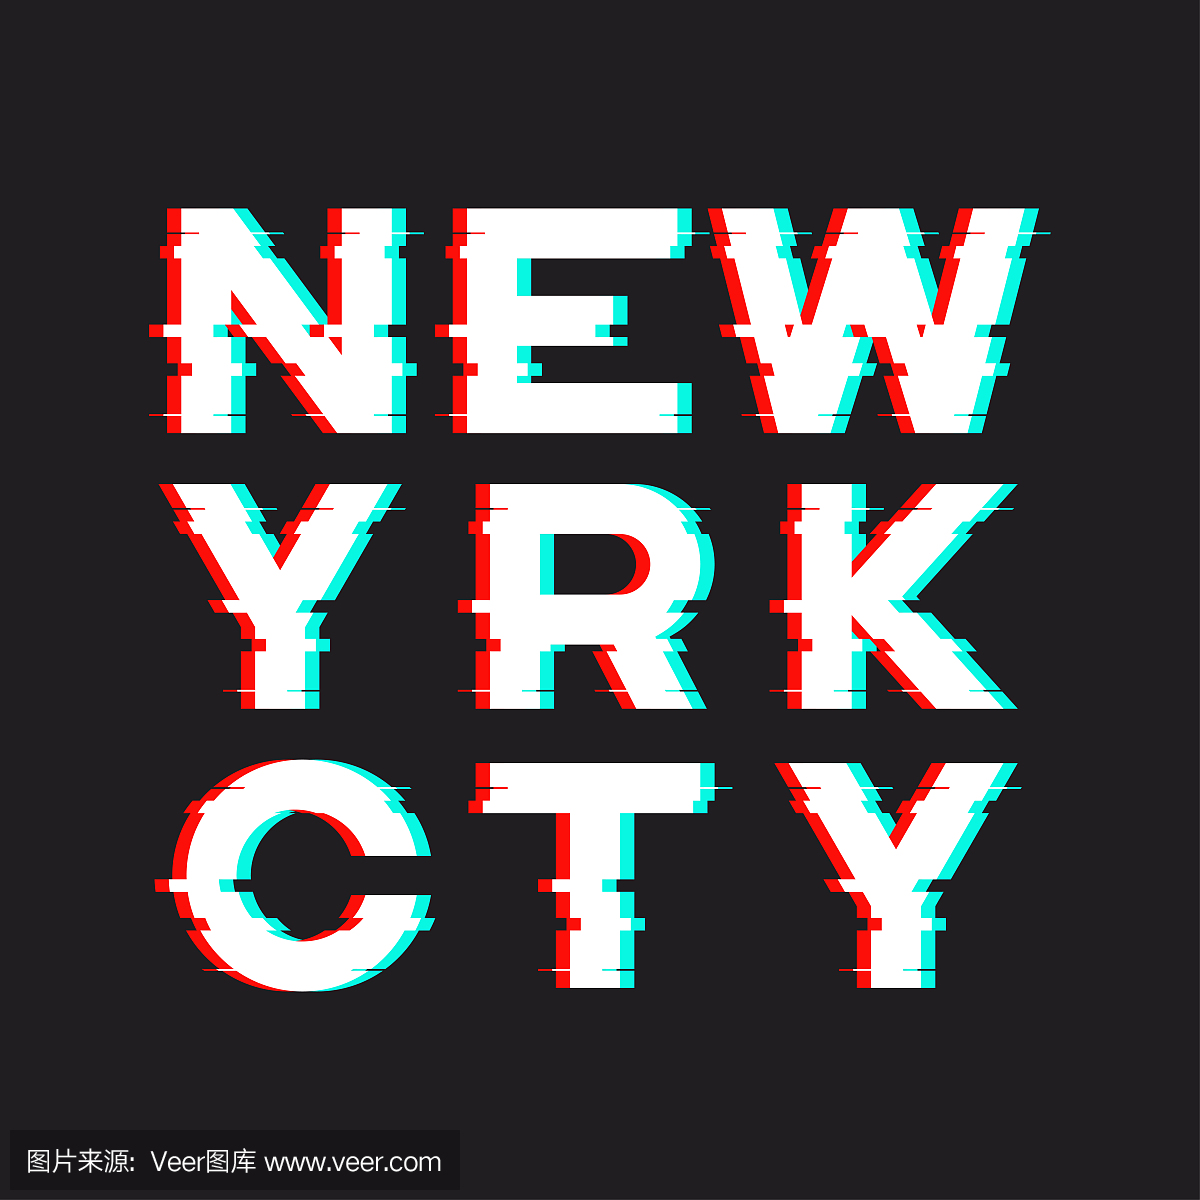 纽约T恤和服装设计有噪音,小故障,失真效应。